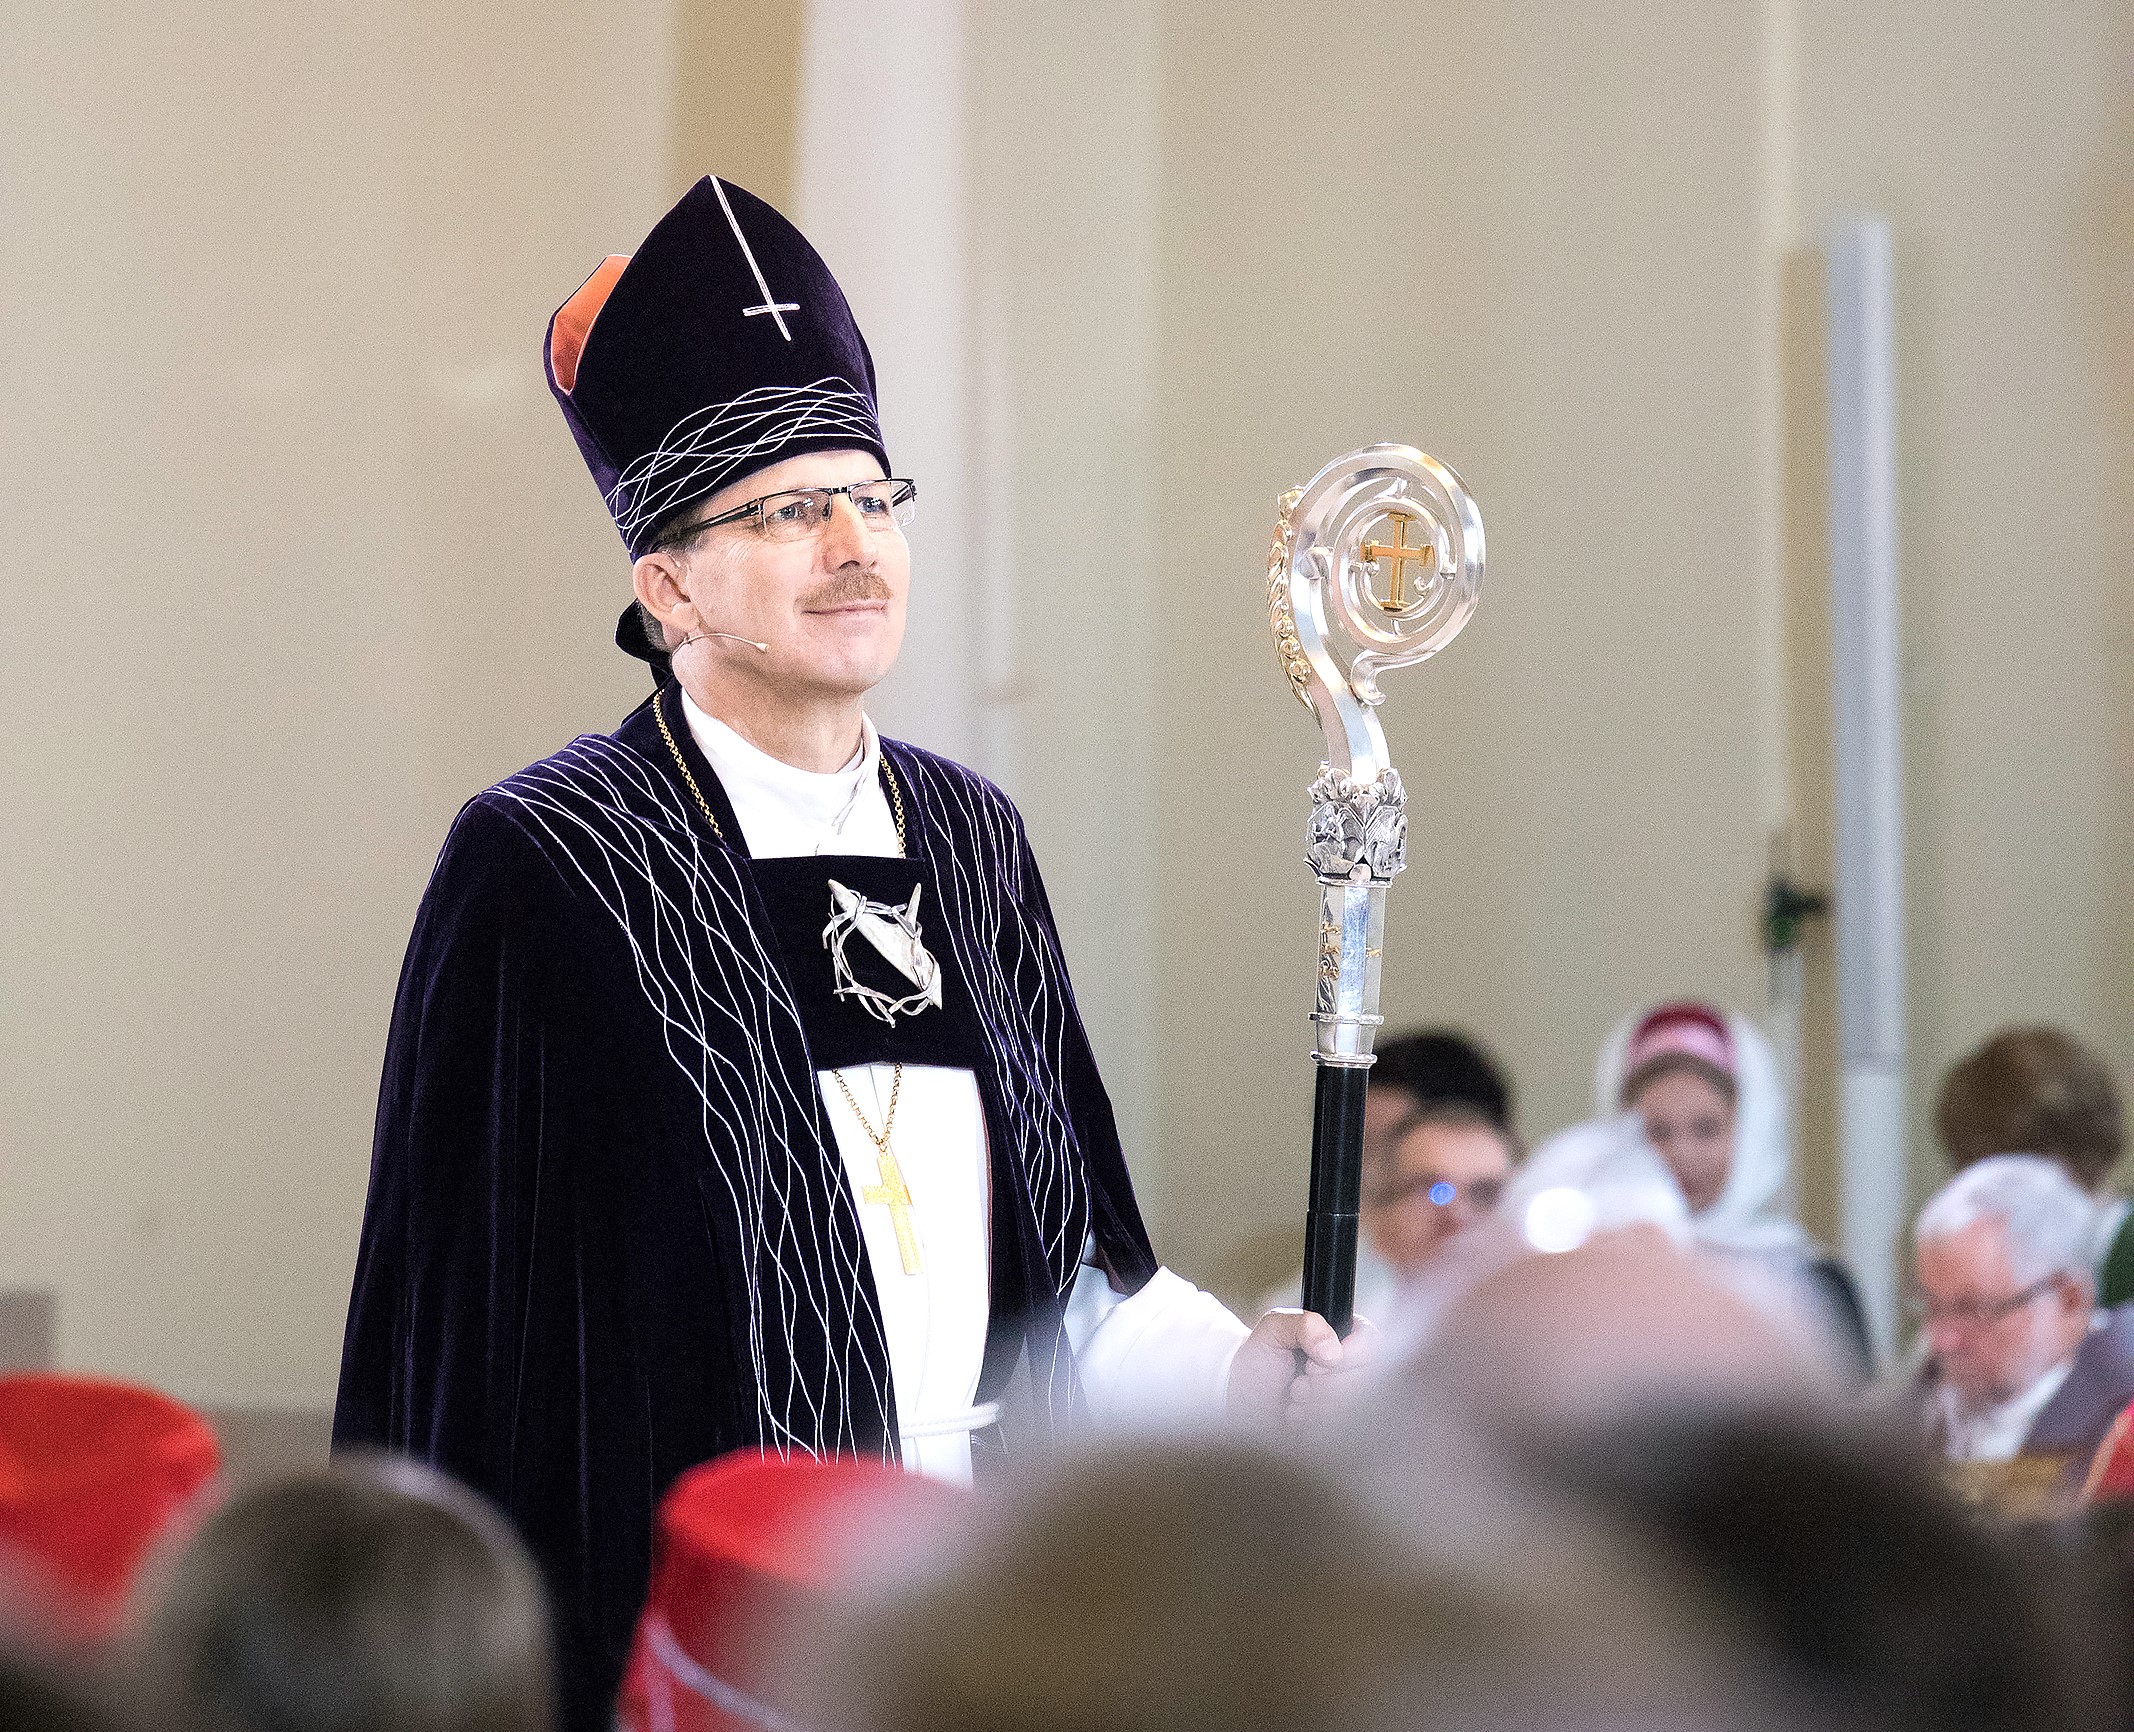 Piispa Jukka Keskitalo seisoo kirkkosalissa tummat piispanvaatteet päällä.